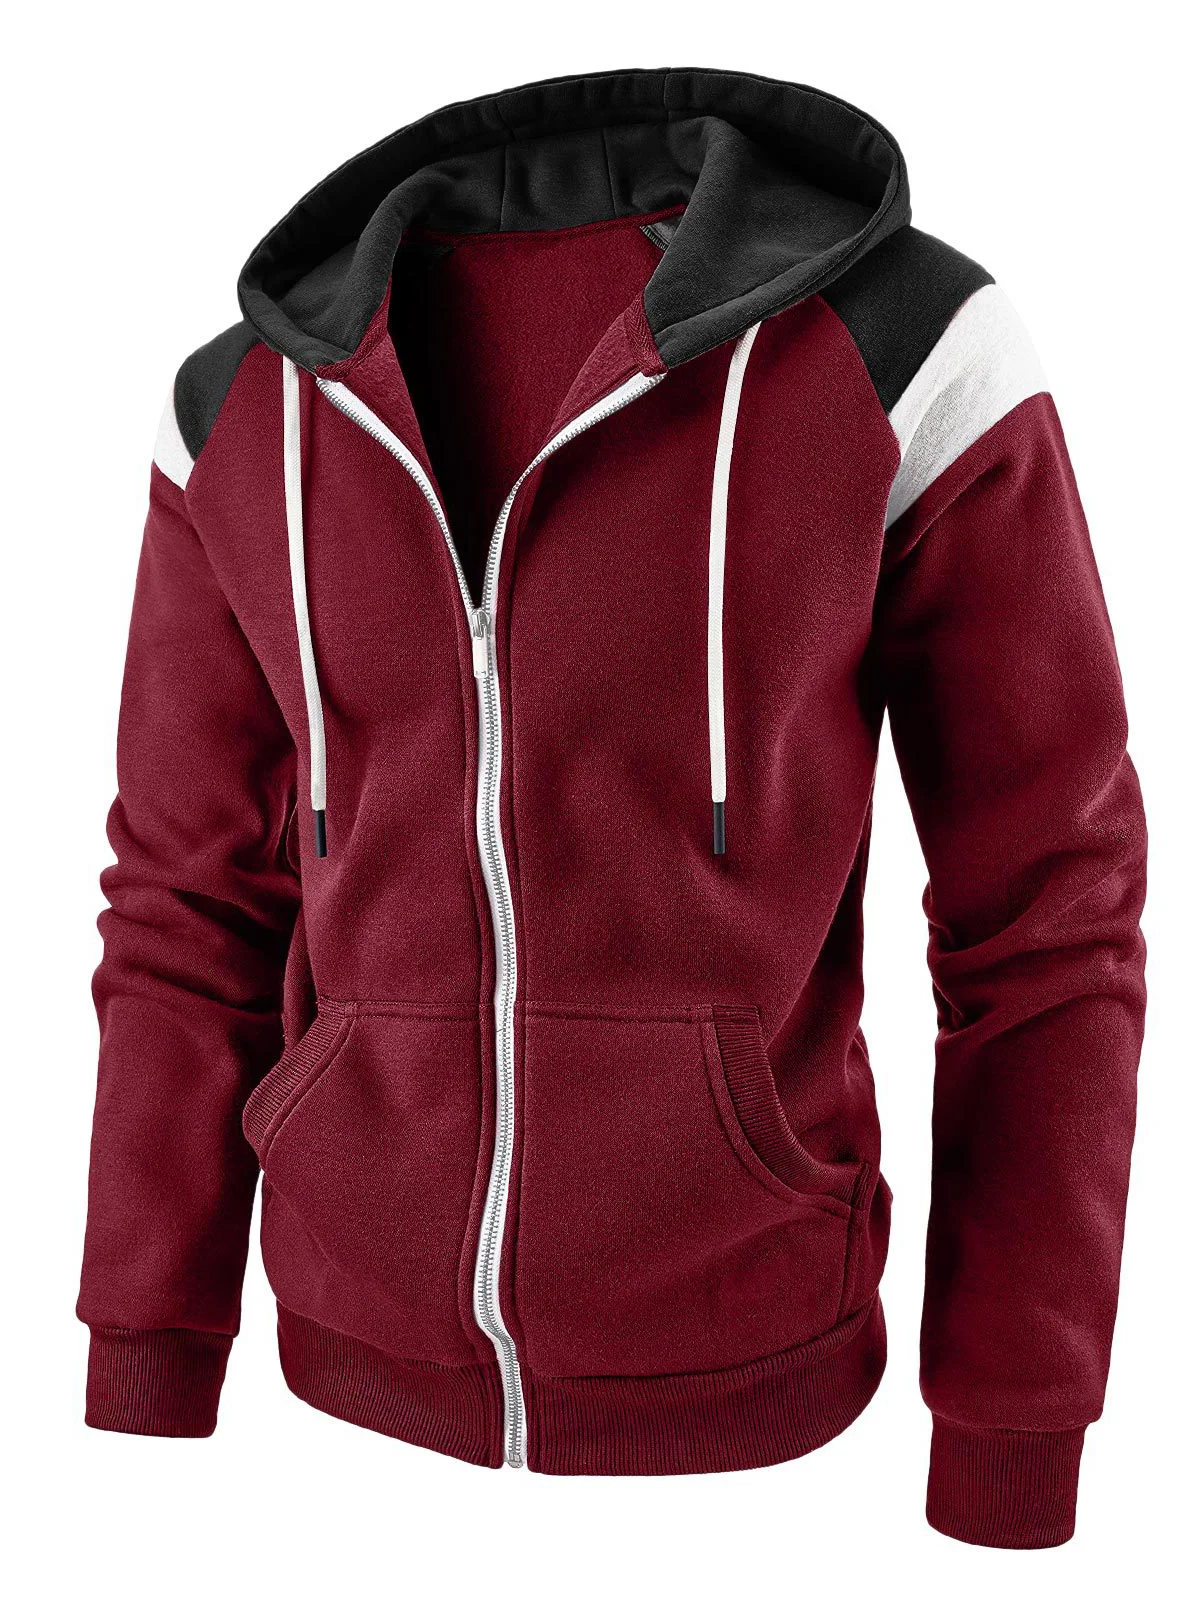 Royaura Men's Casual Contrast Plain Hooded Zip Sweatshirt